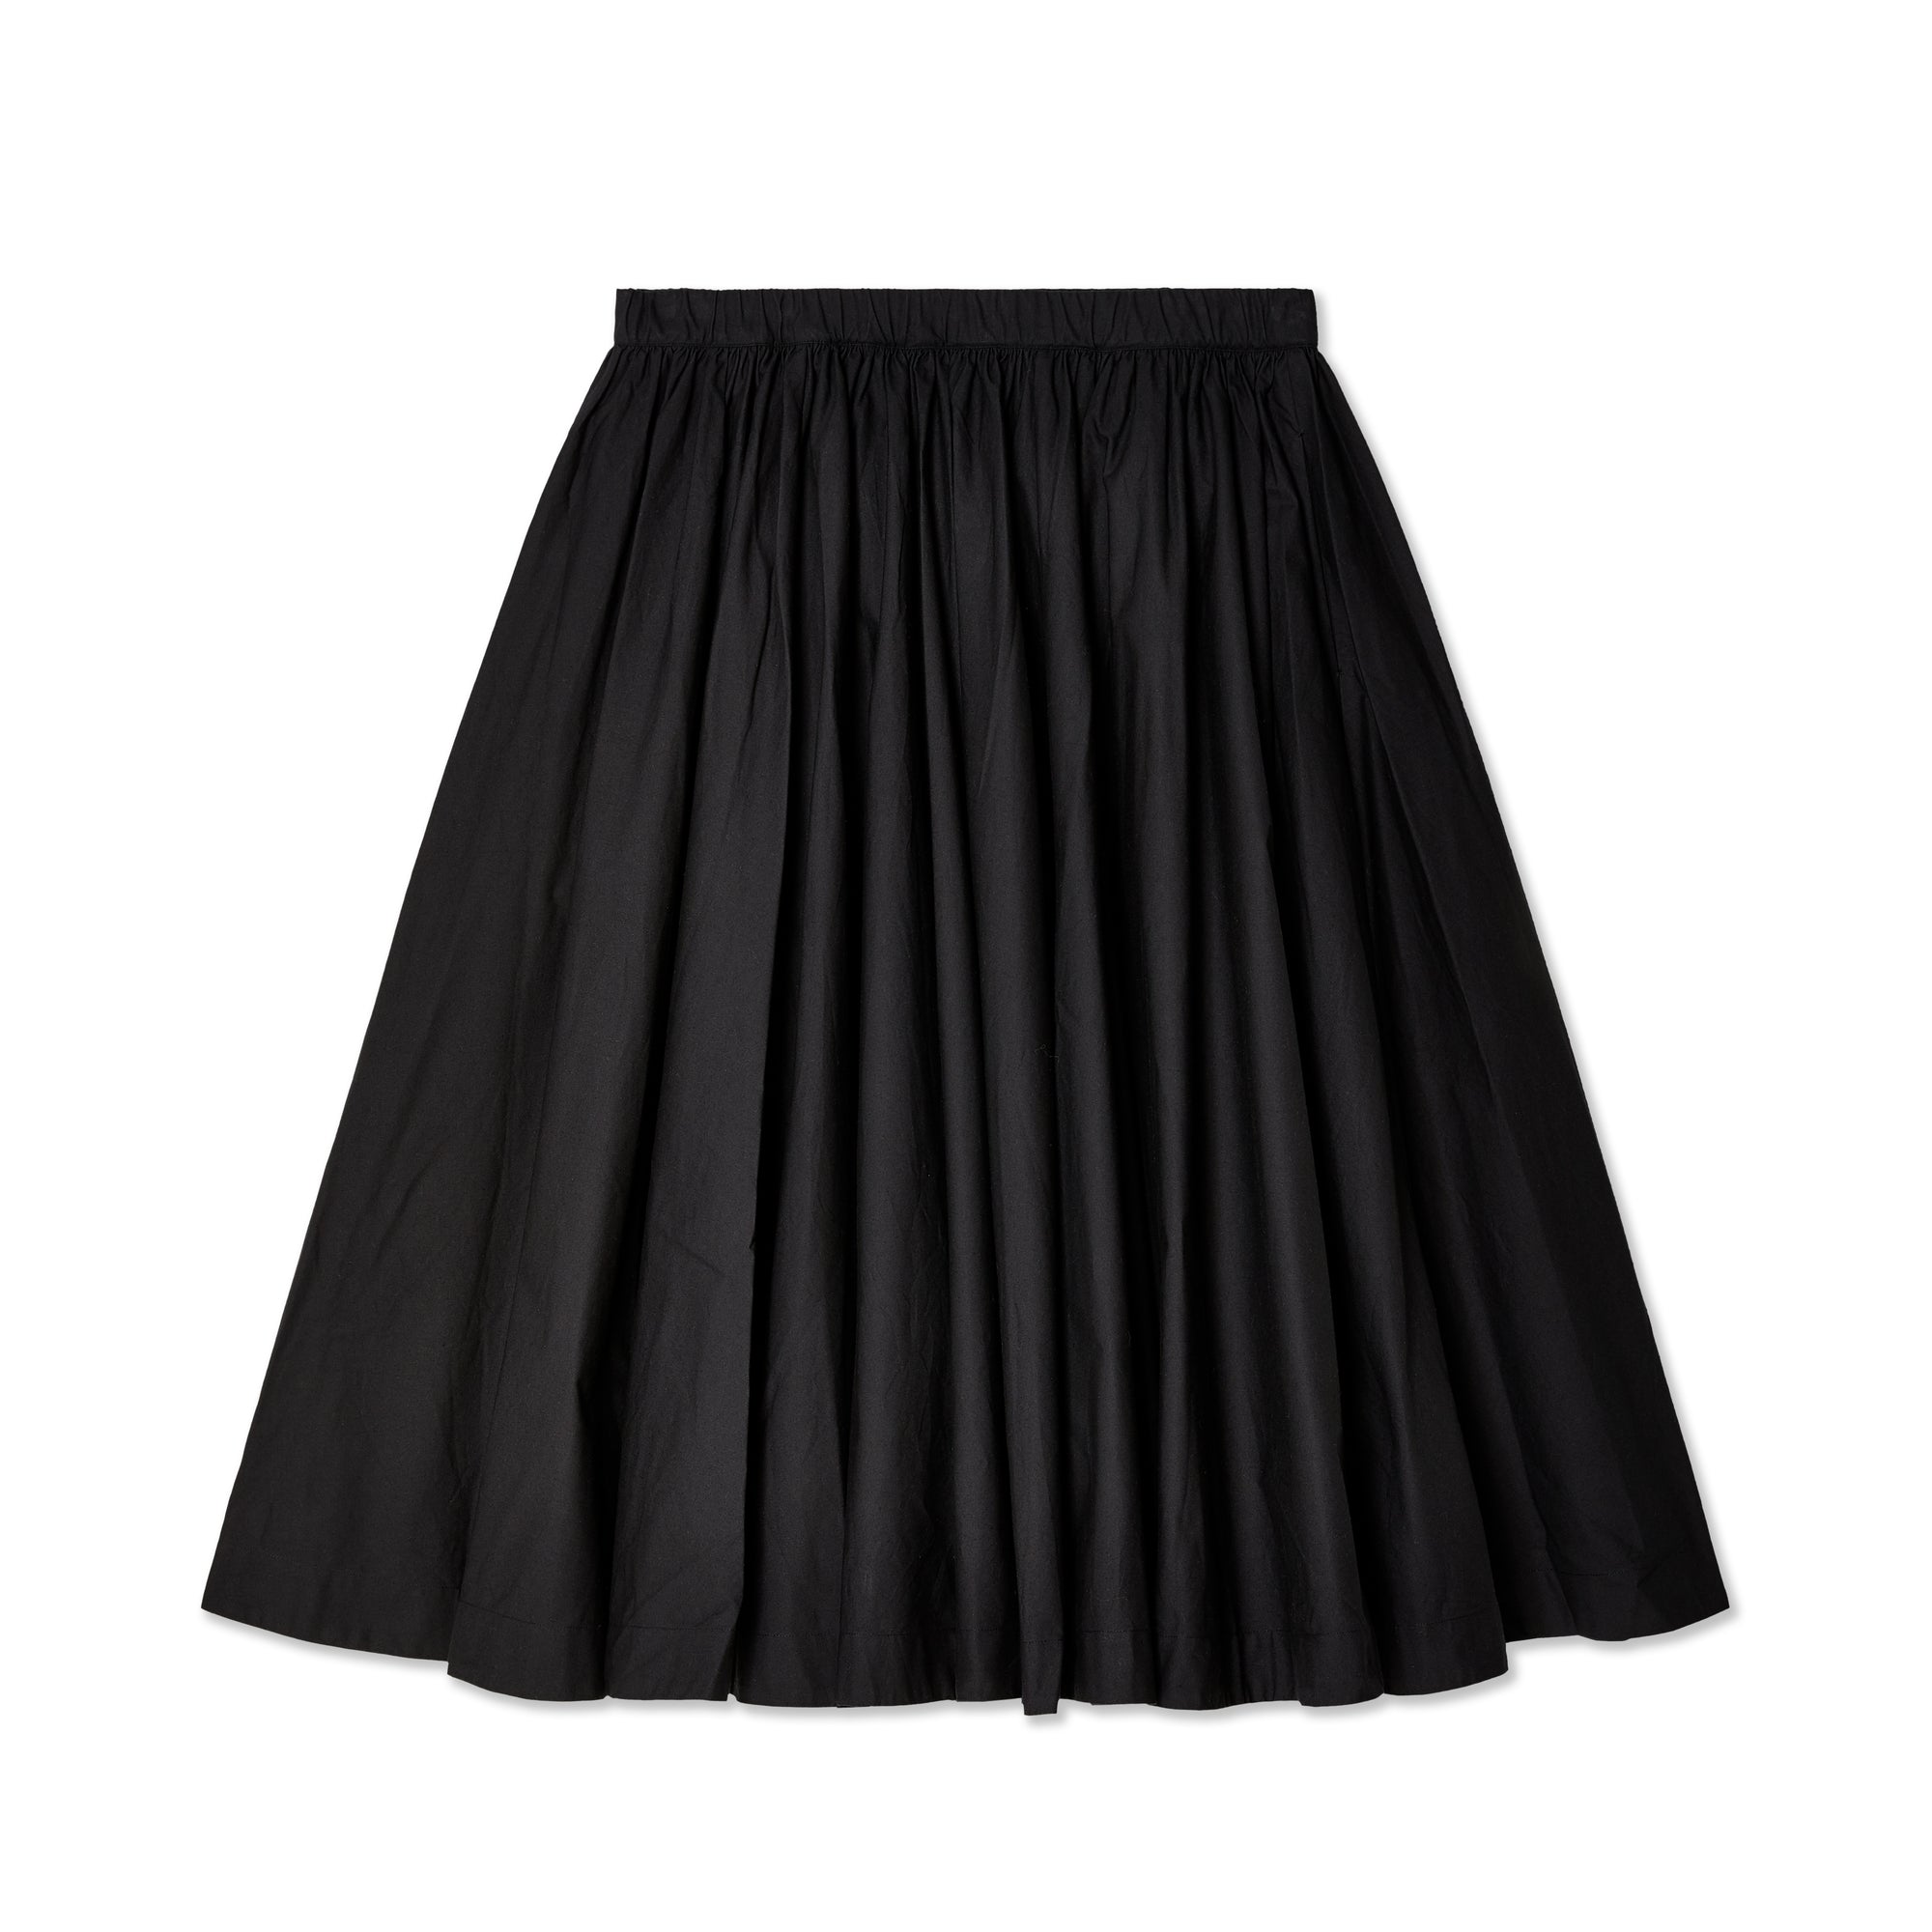 Egg Trading - Women's Holly Skirt - (Black) view 1